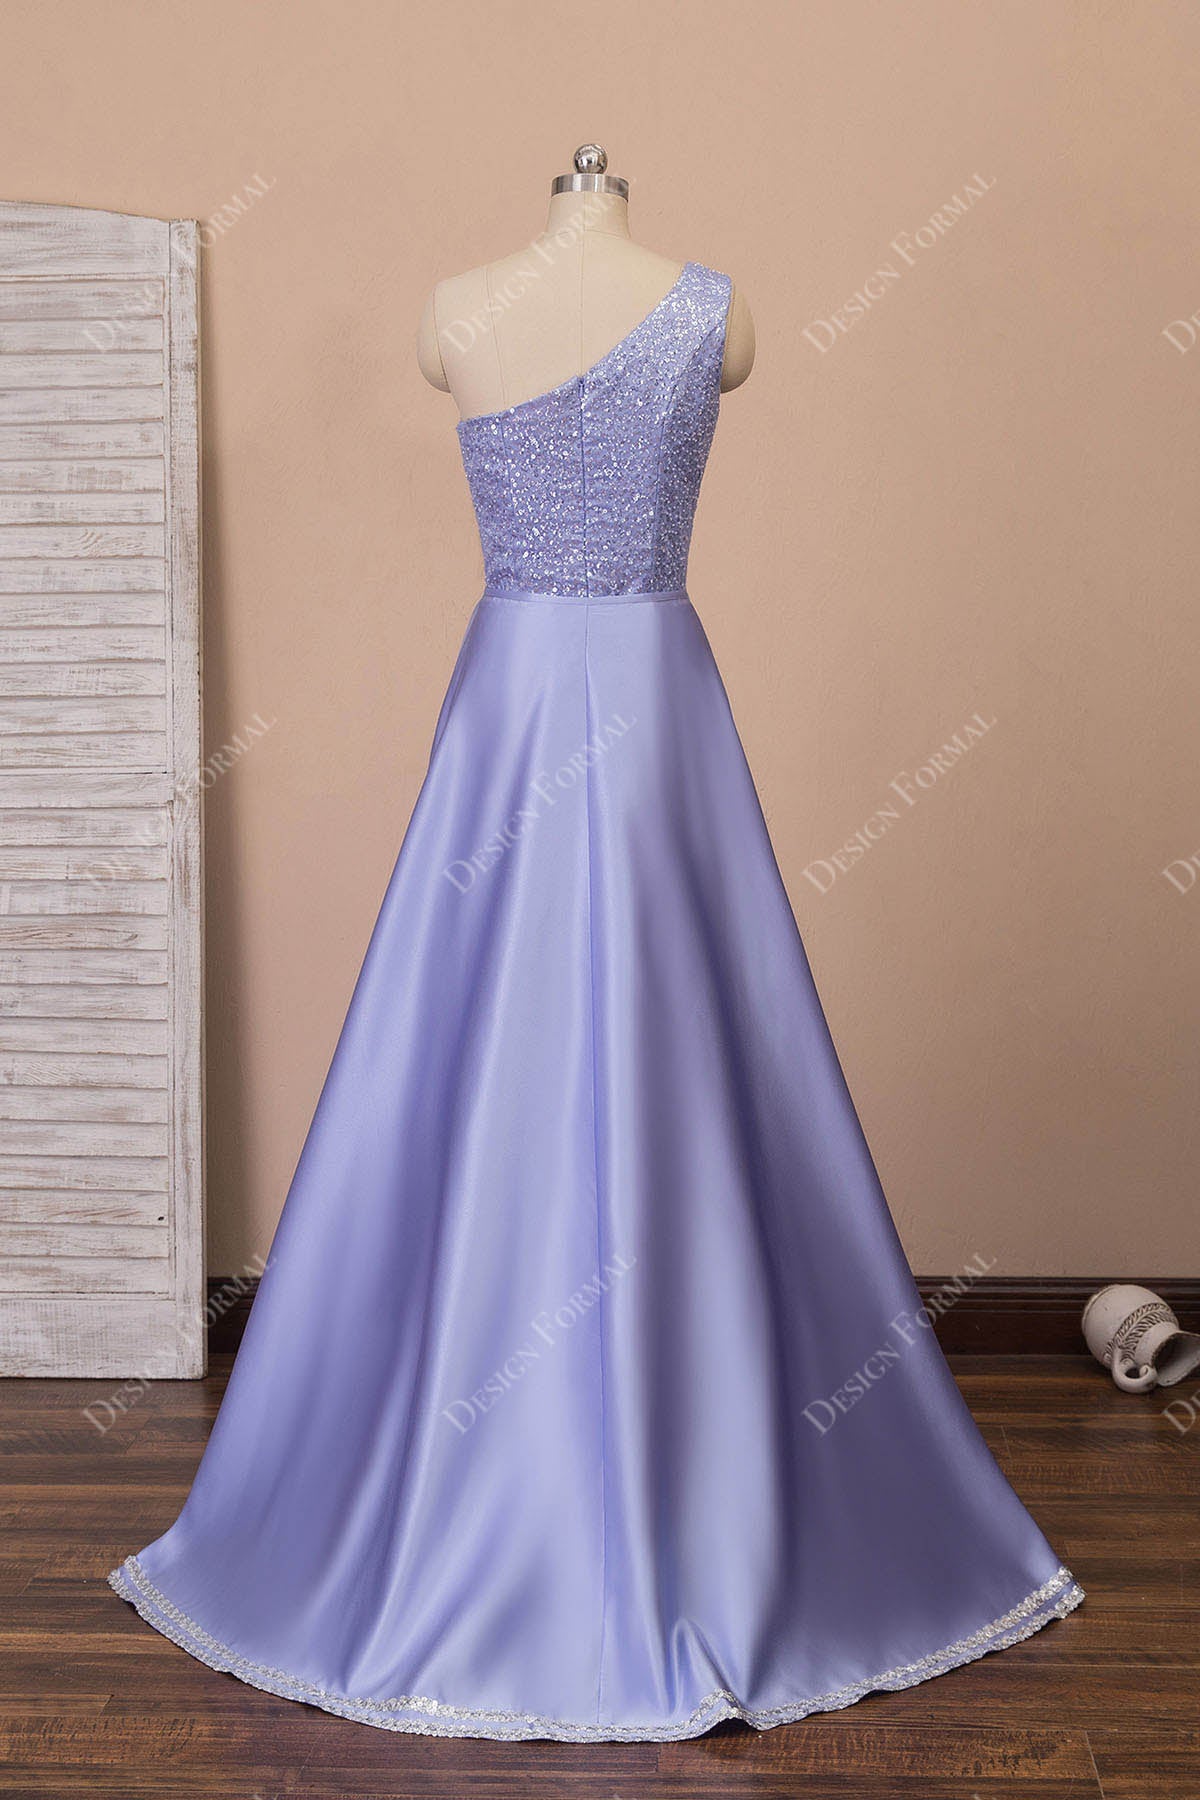 A-line purple satin overskirt dress